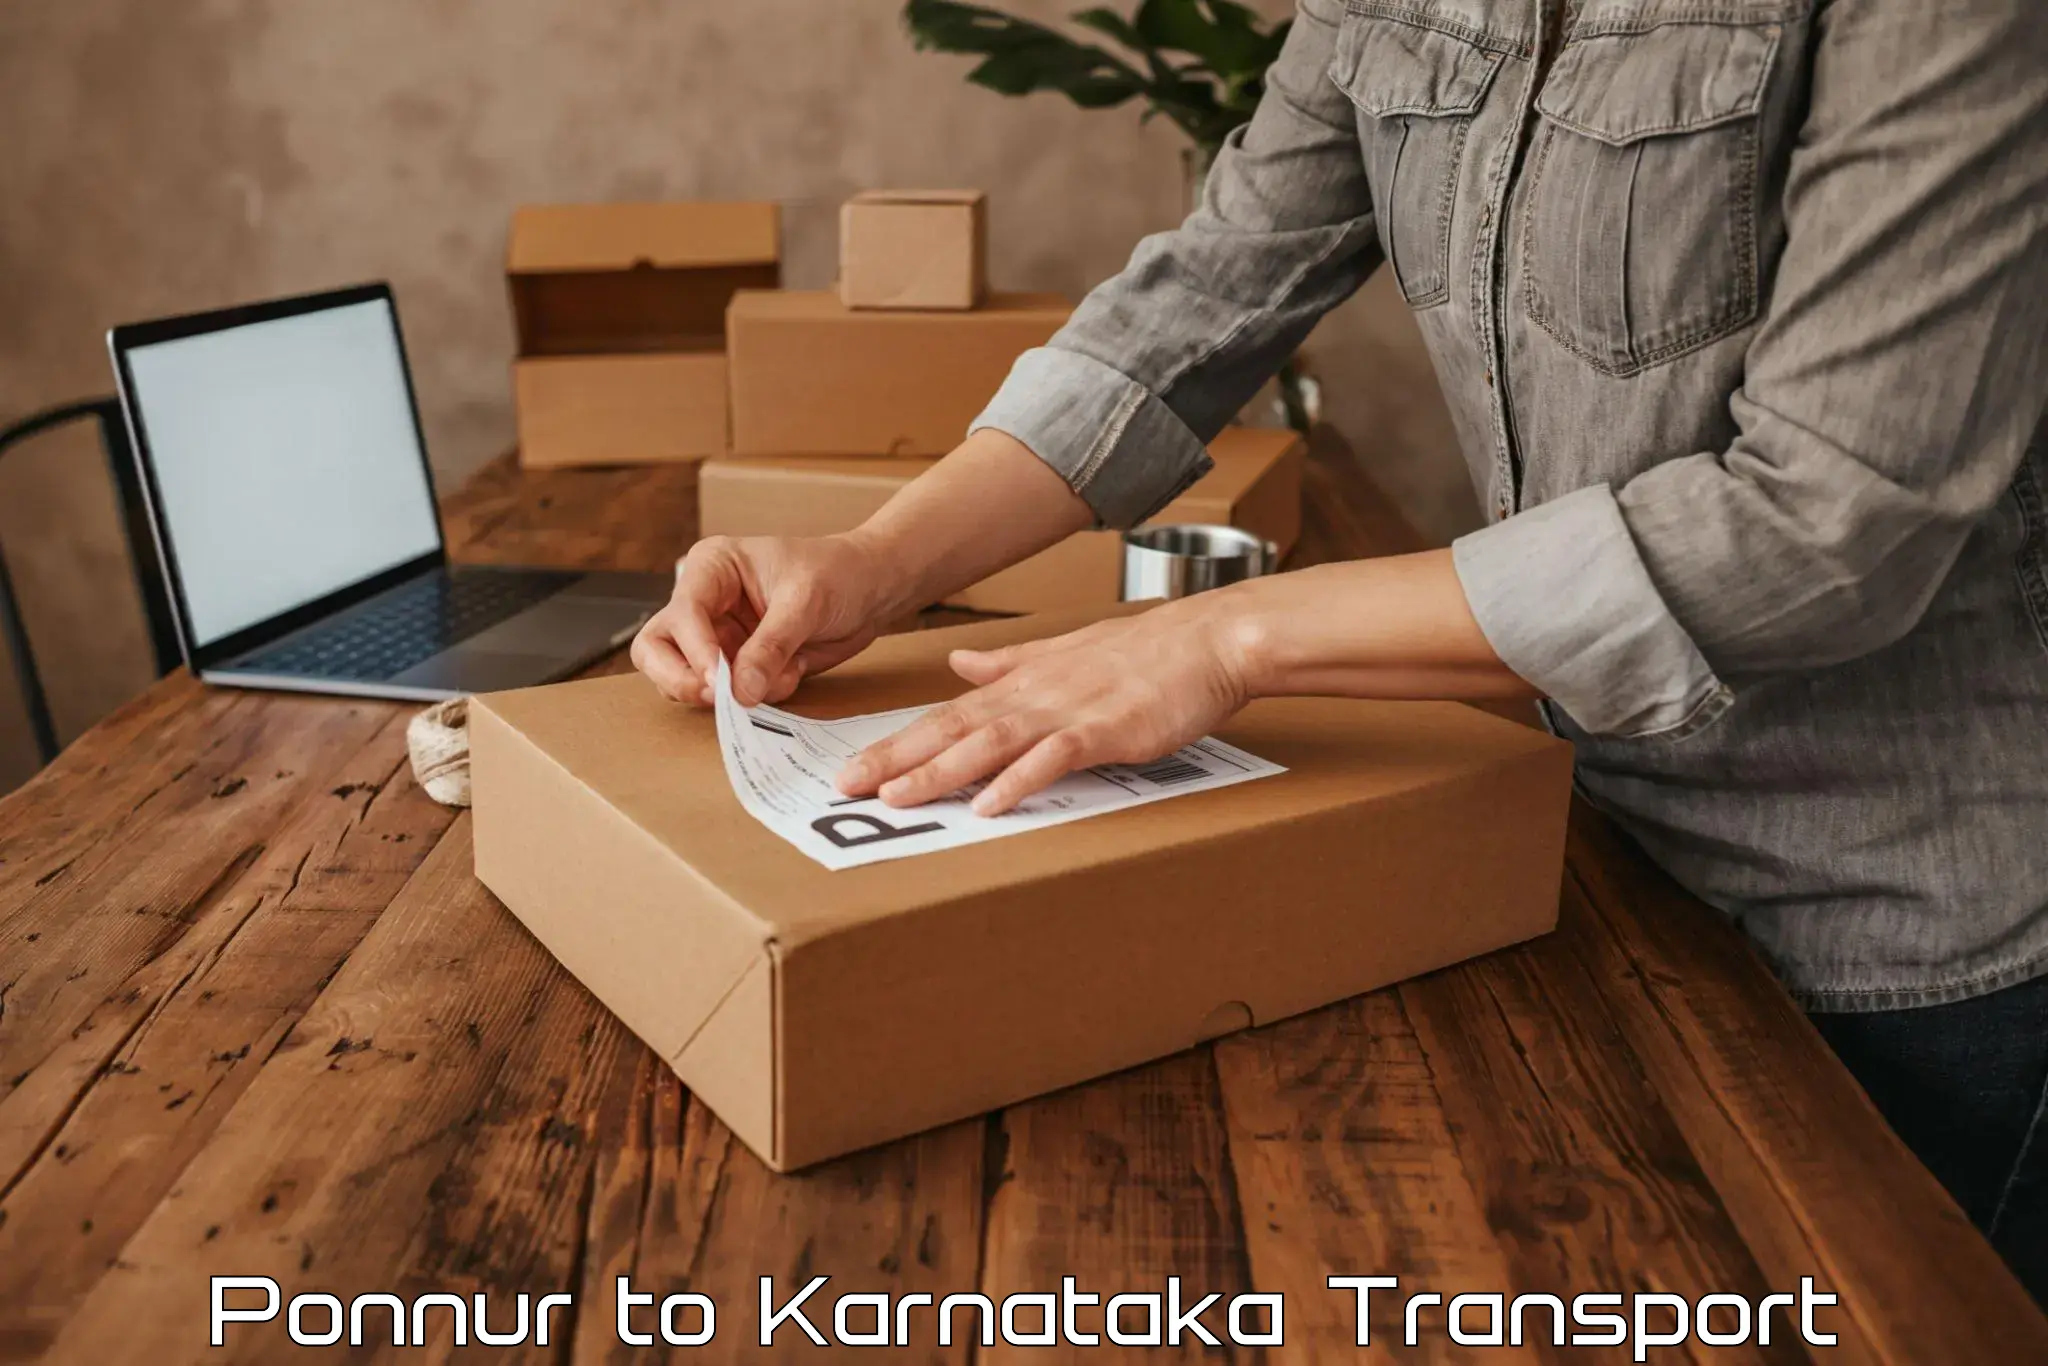 Furniture transport service Ponnur to Srirangapatna